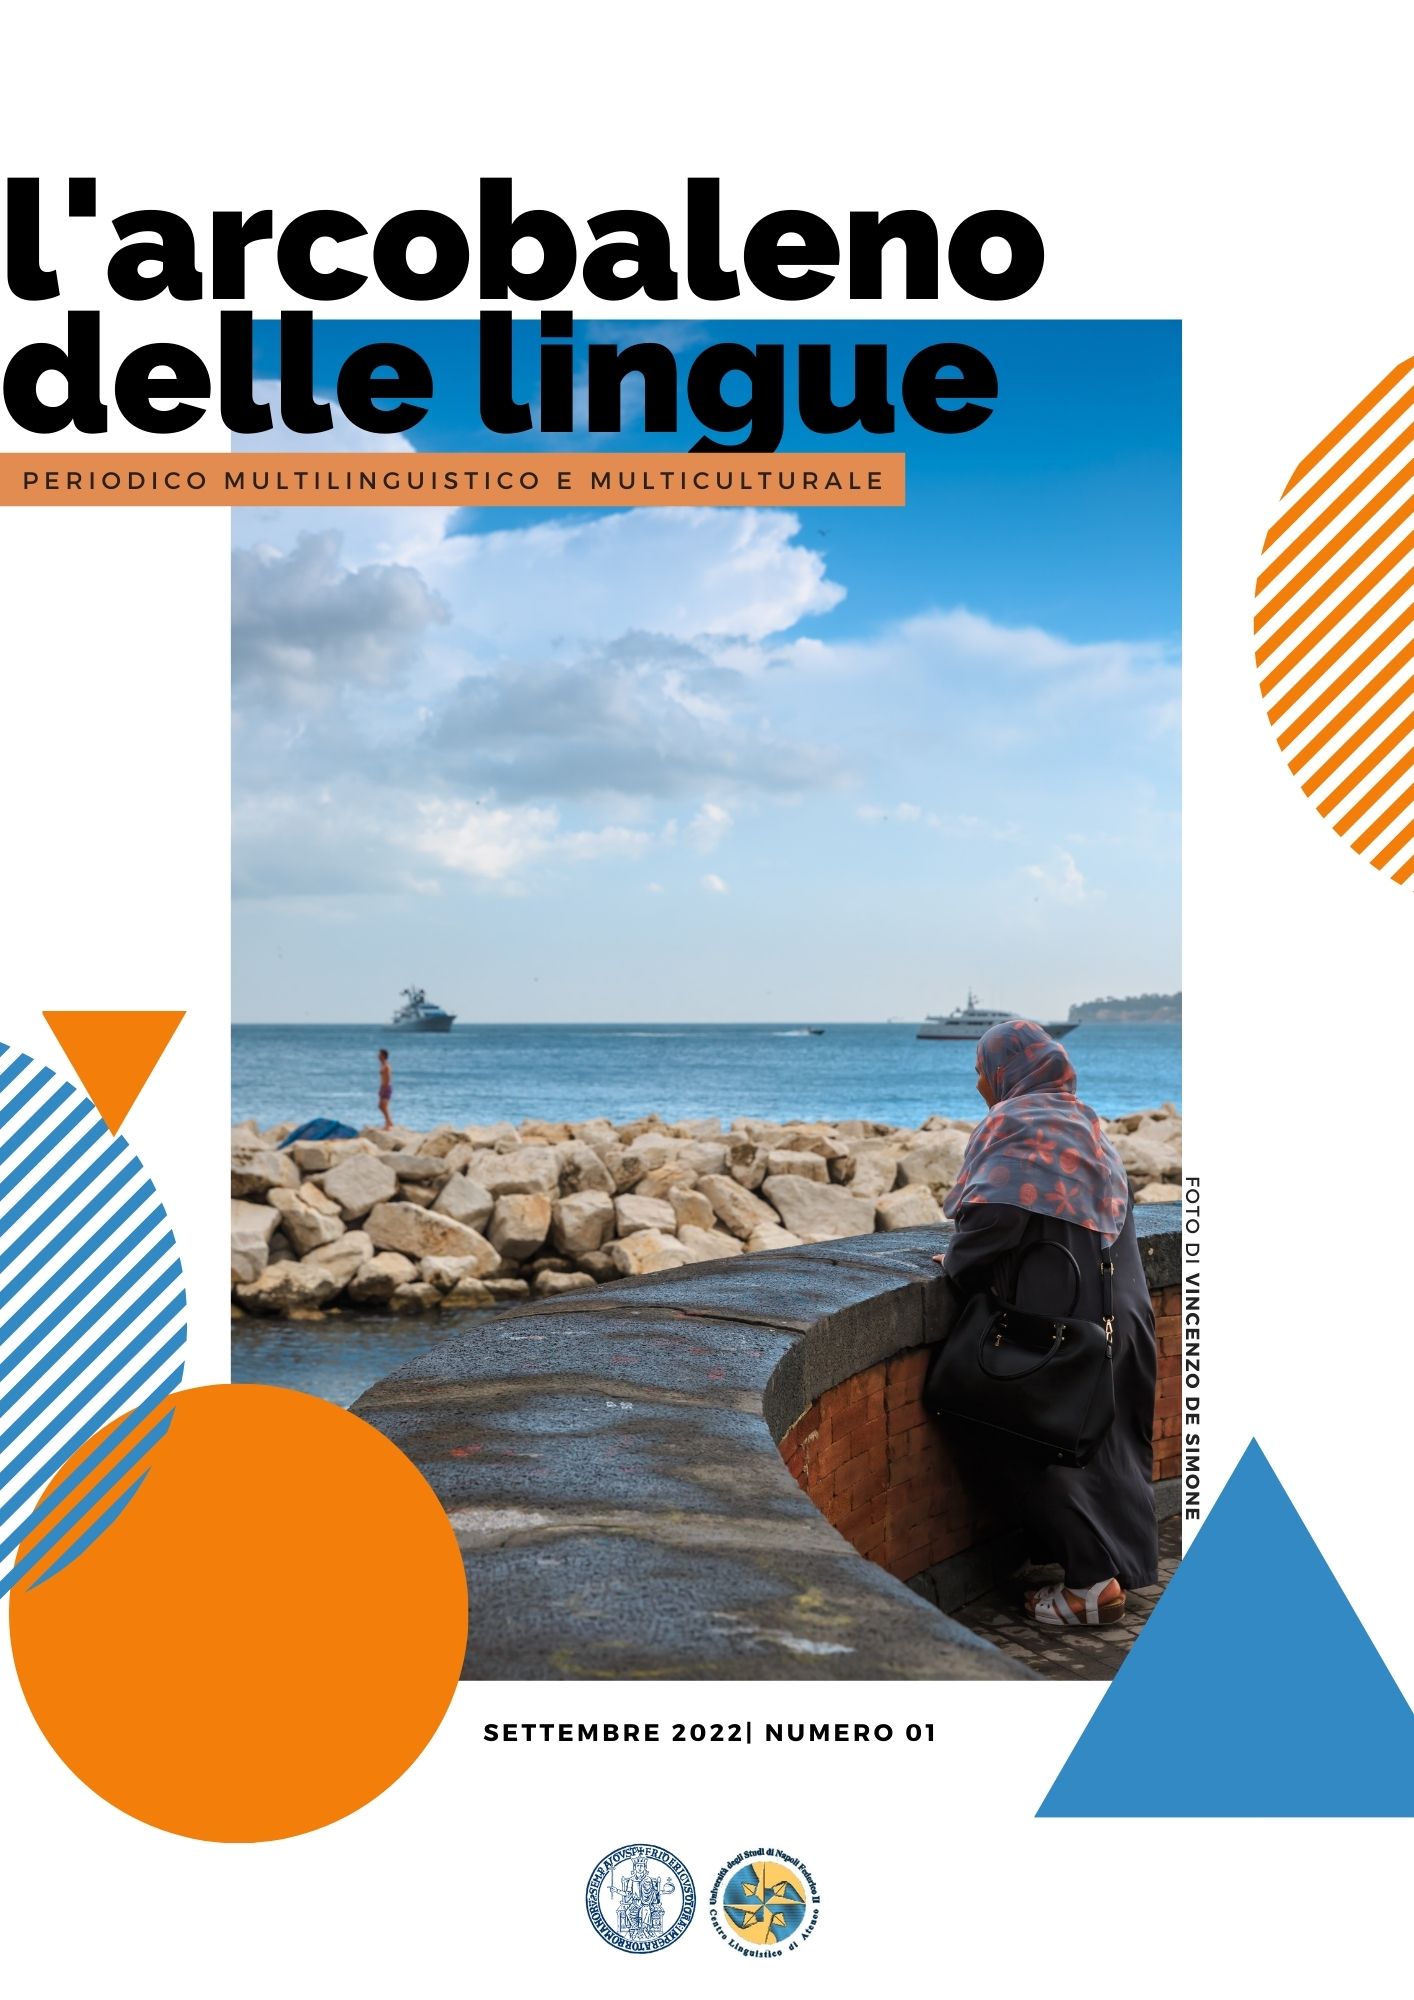 Immagine relativa al contenuto Nasce il Magazine ‘L'arcobaleno delle lingue' del Centro Linguistico d'Ateneo